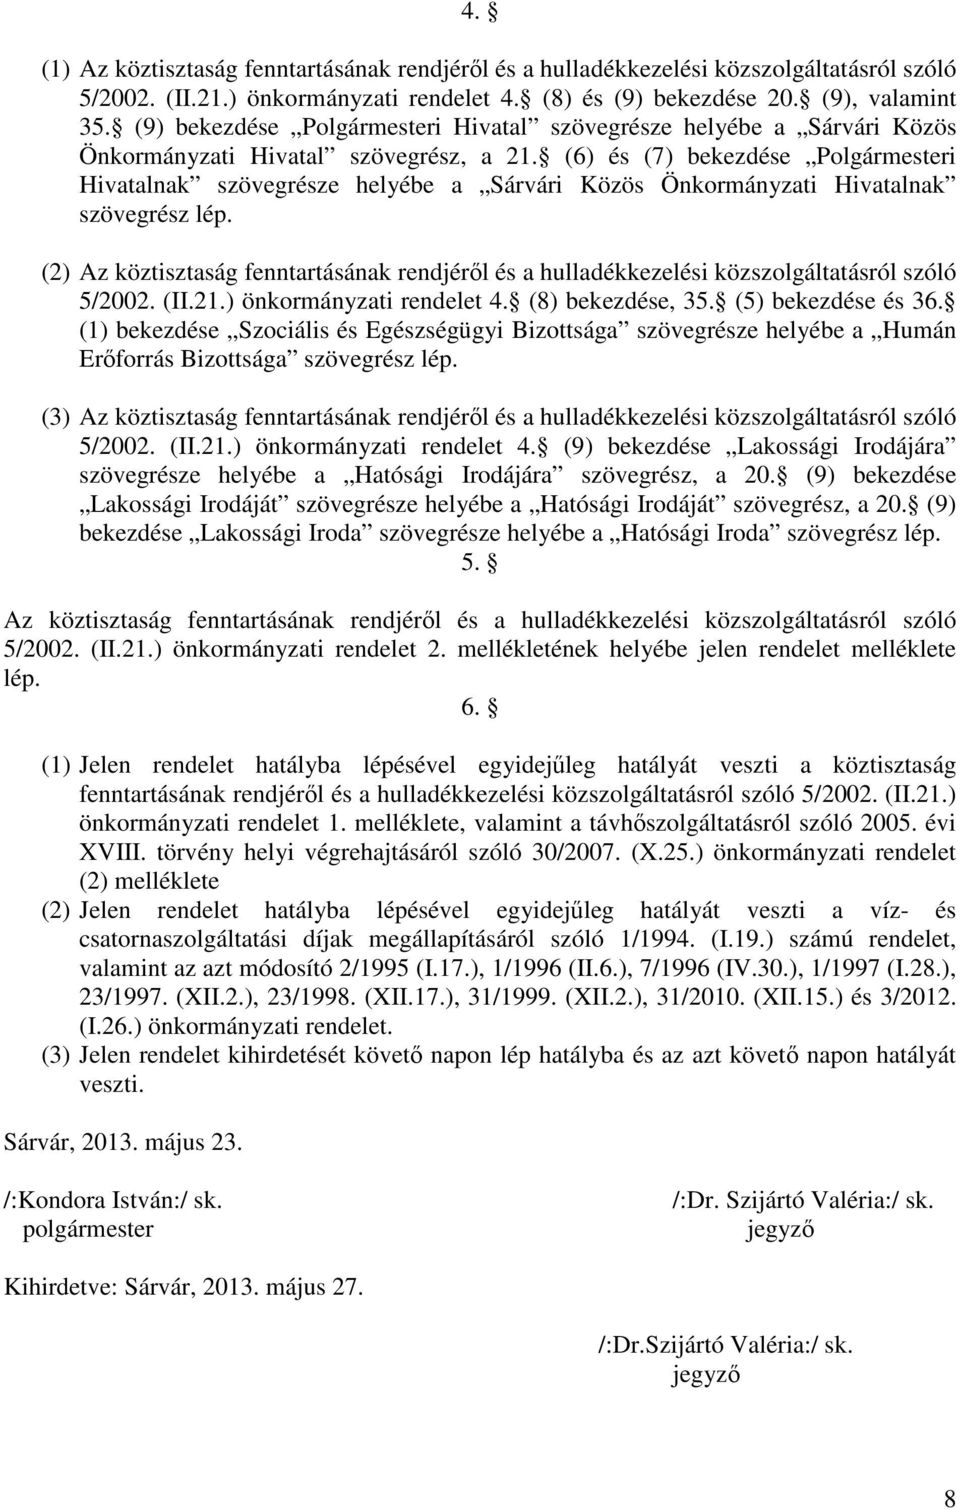 (6) és (7) bekezdése Polgármesteri Hivatalnak szövegrésze helyébe a Sárvári Közös Önkormányzati Hivatalnak szövegrész lép.